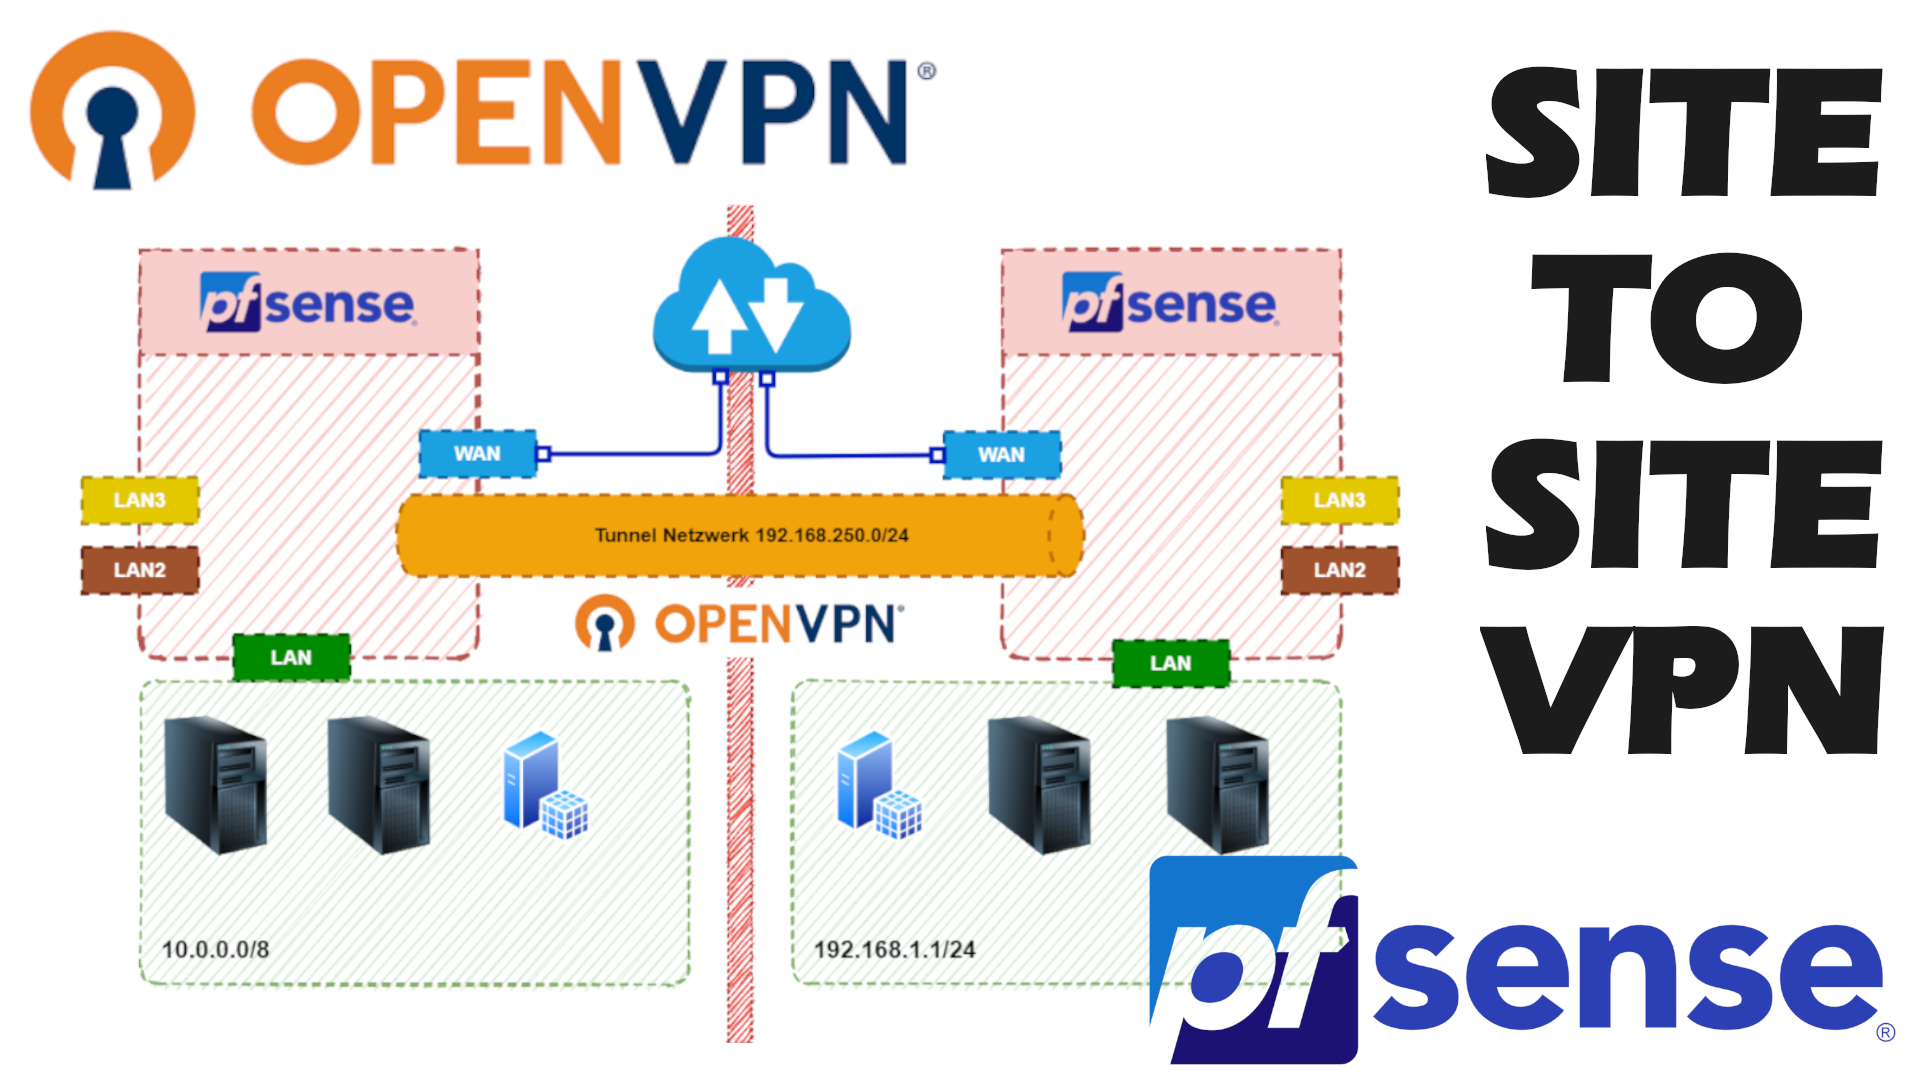 pfsense 2.1 site to site openvpn